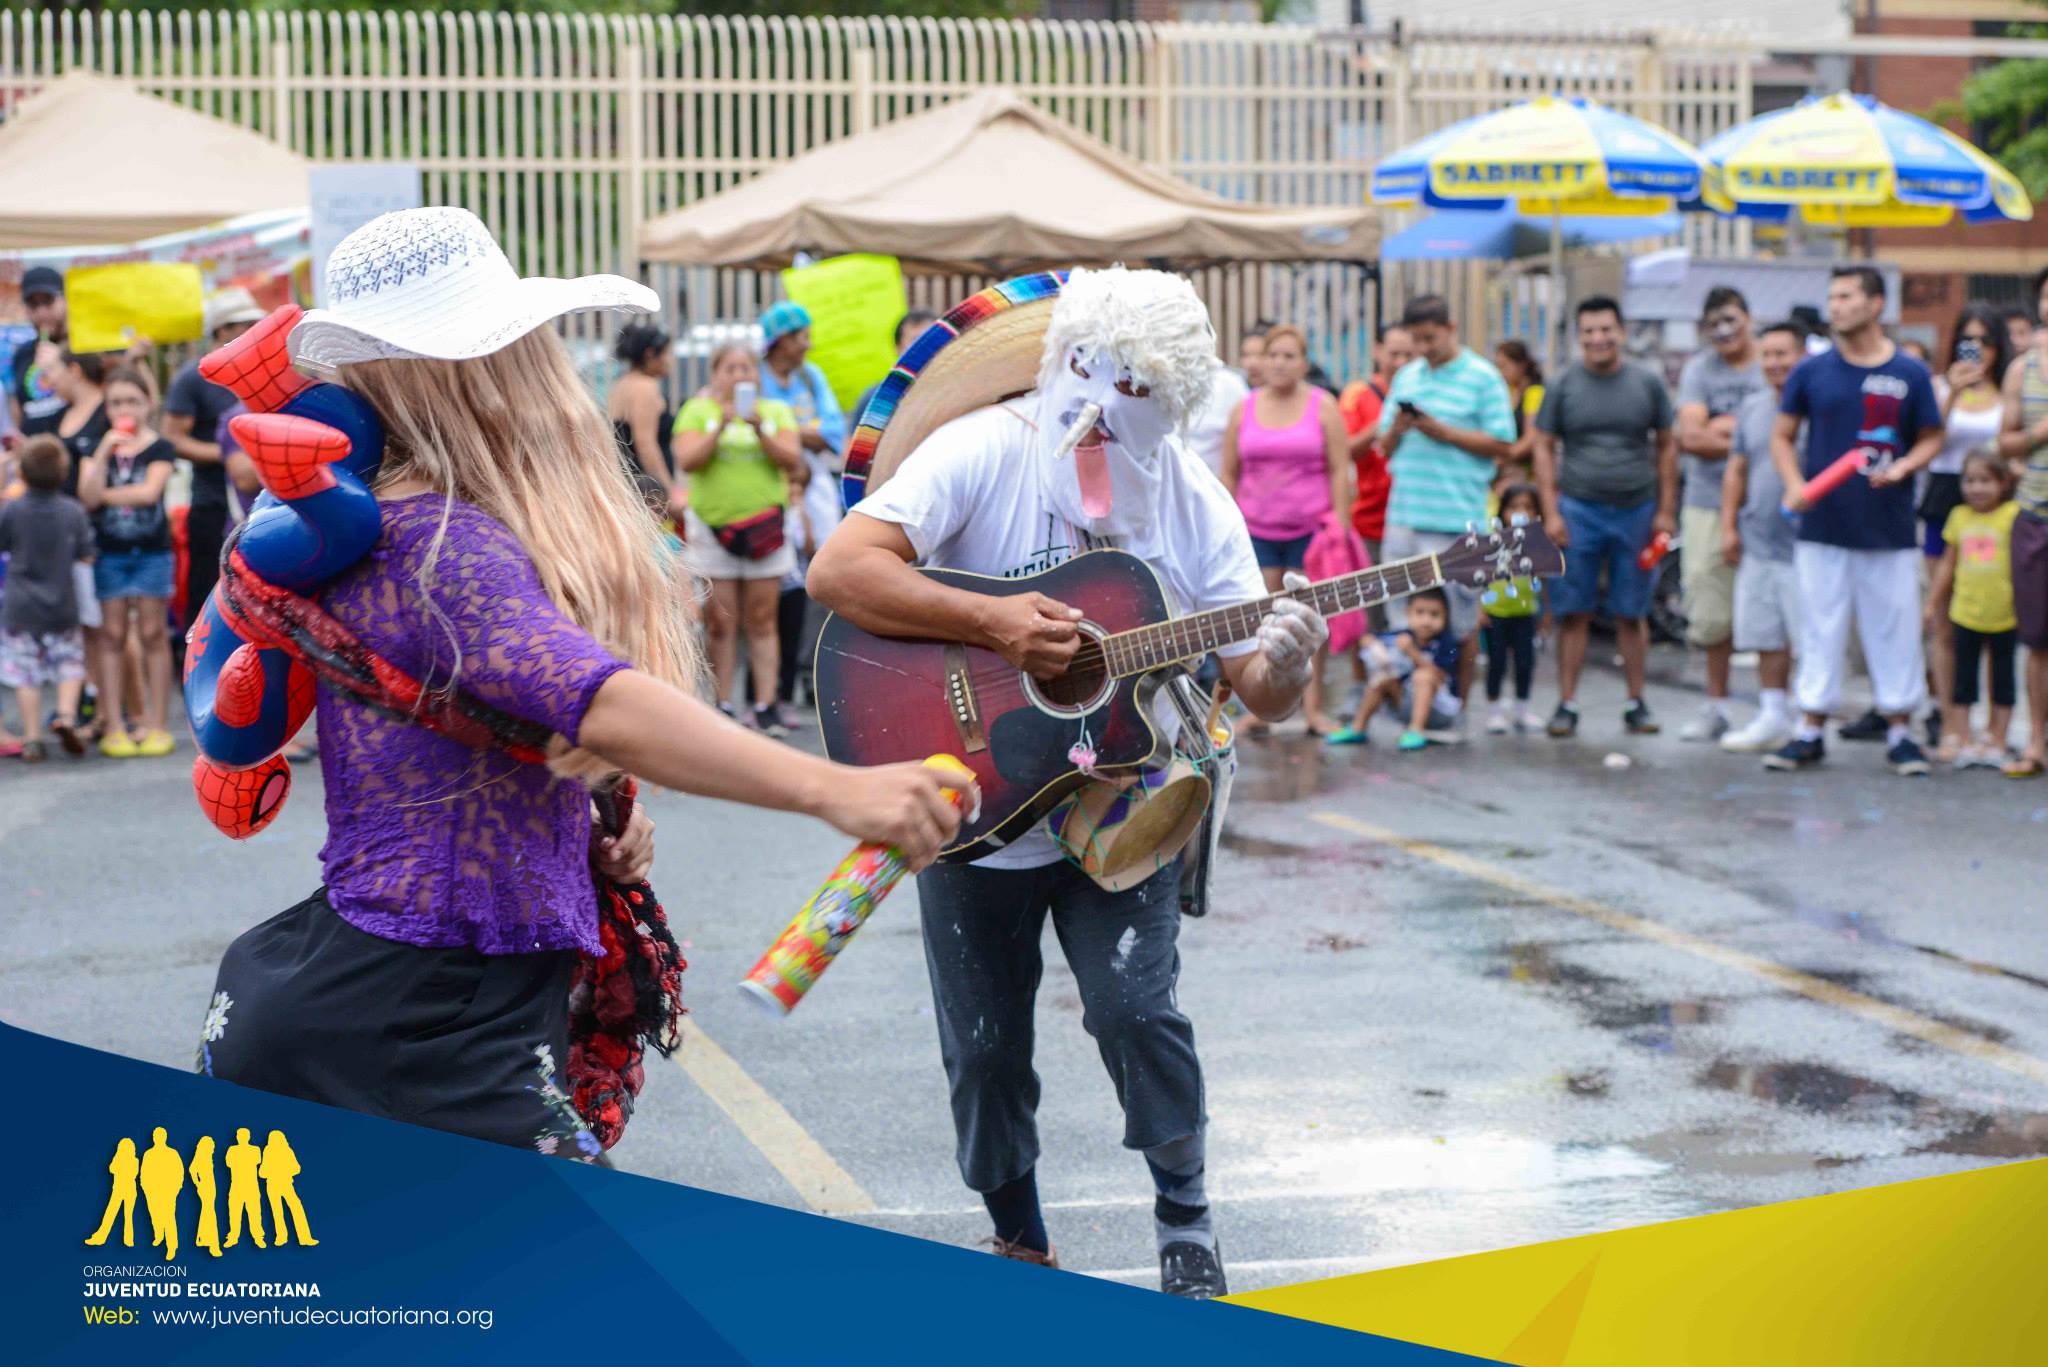 Celebrando el Carnaval al estilo Ecuatoriano en Nueva York